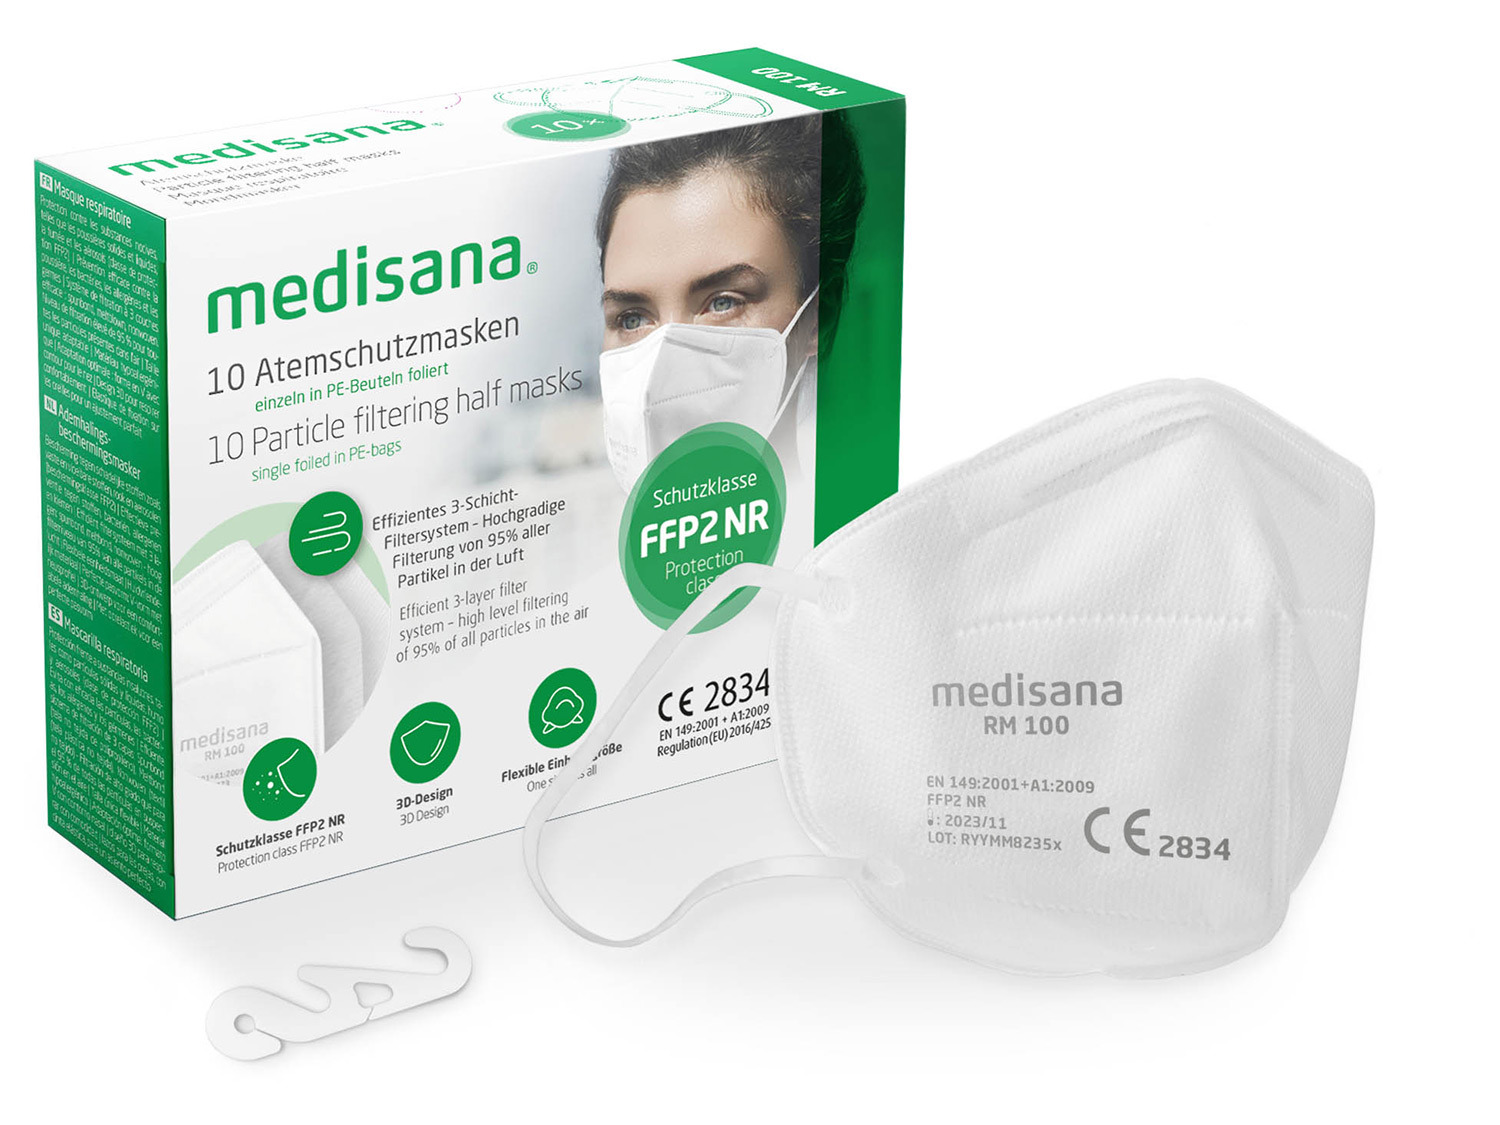 MEDISANA RM 100 FFP2 Atemschutzmasken 10pcs/set | LIDL